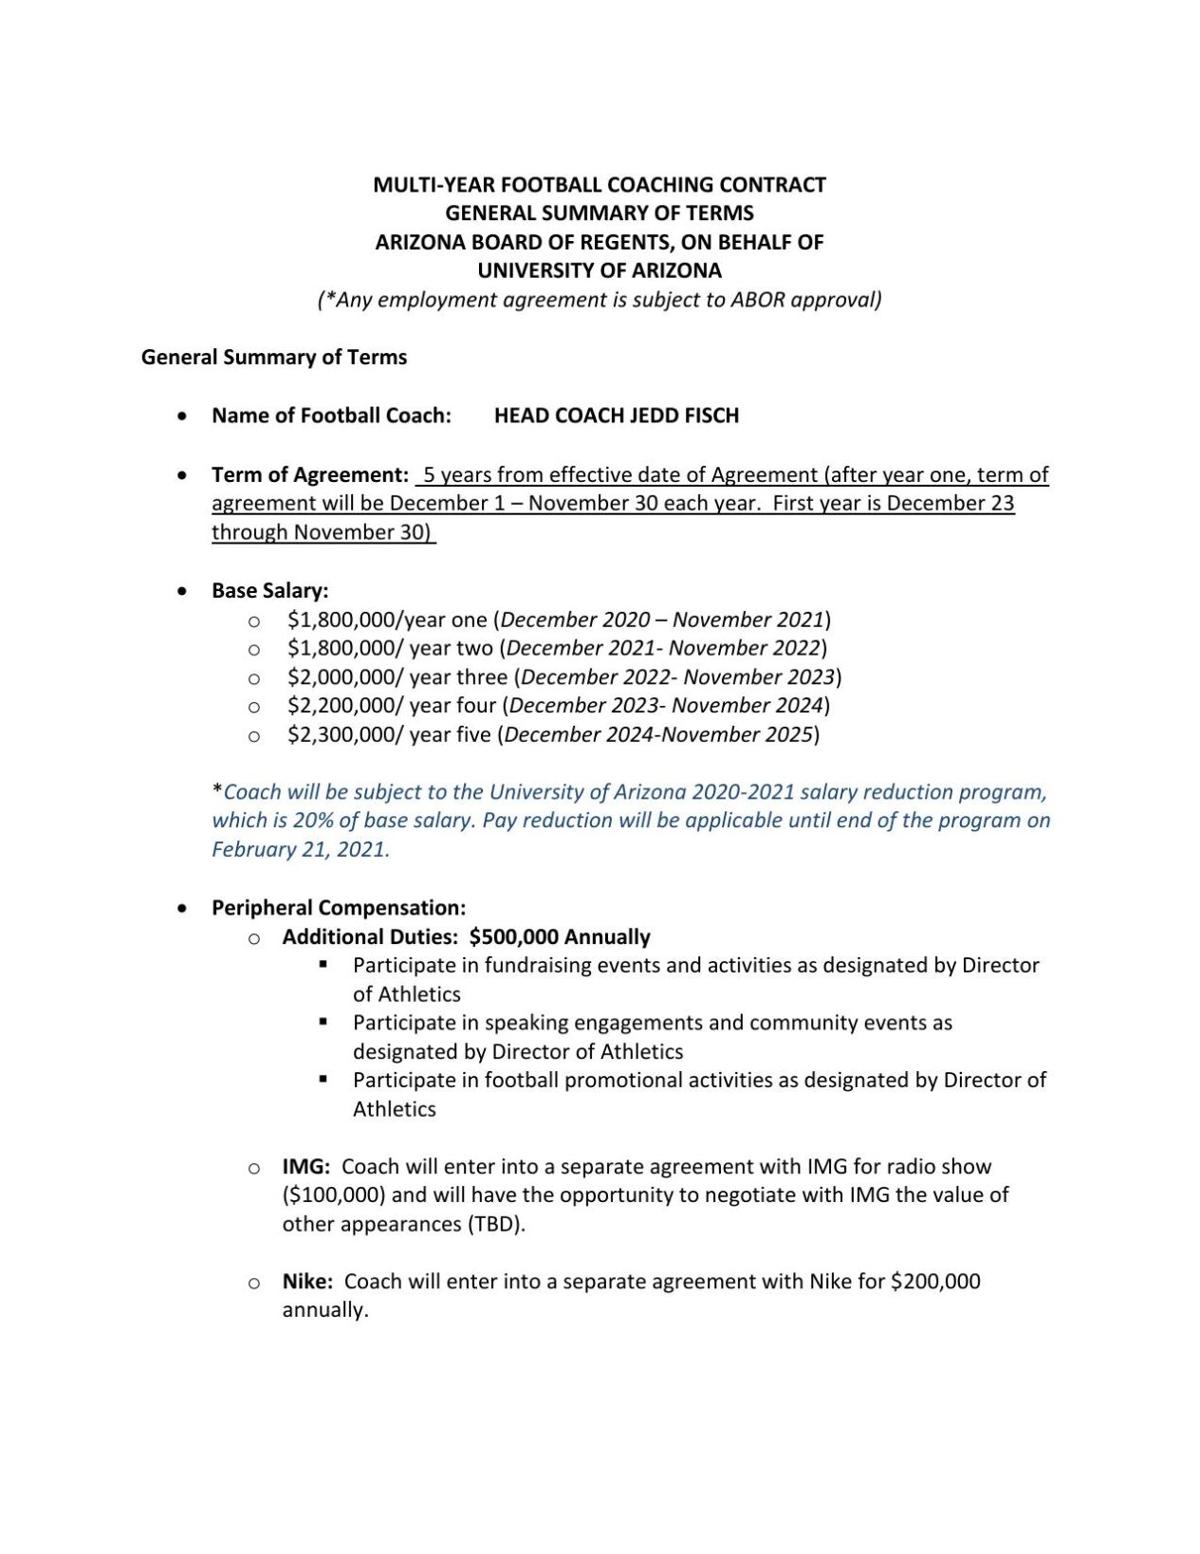 Jedd Fisch's contract term sheet